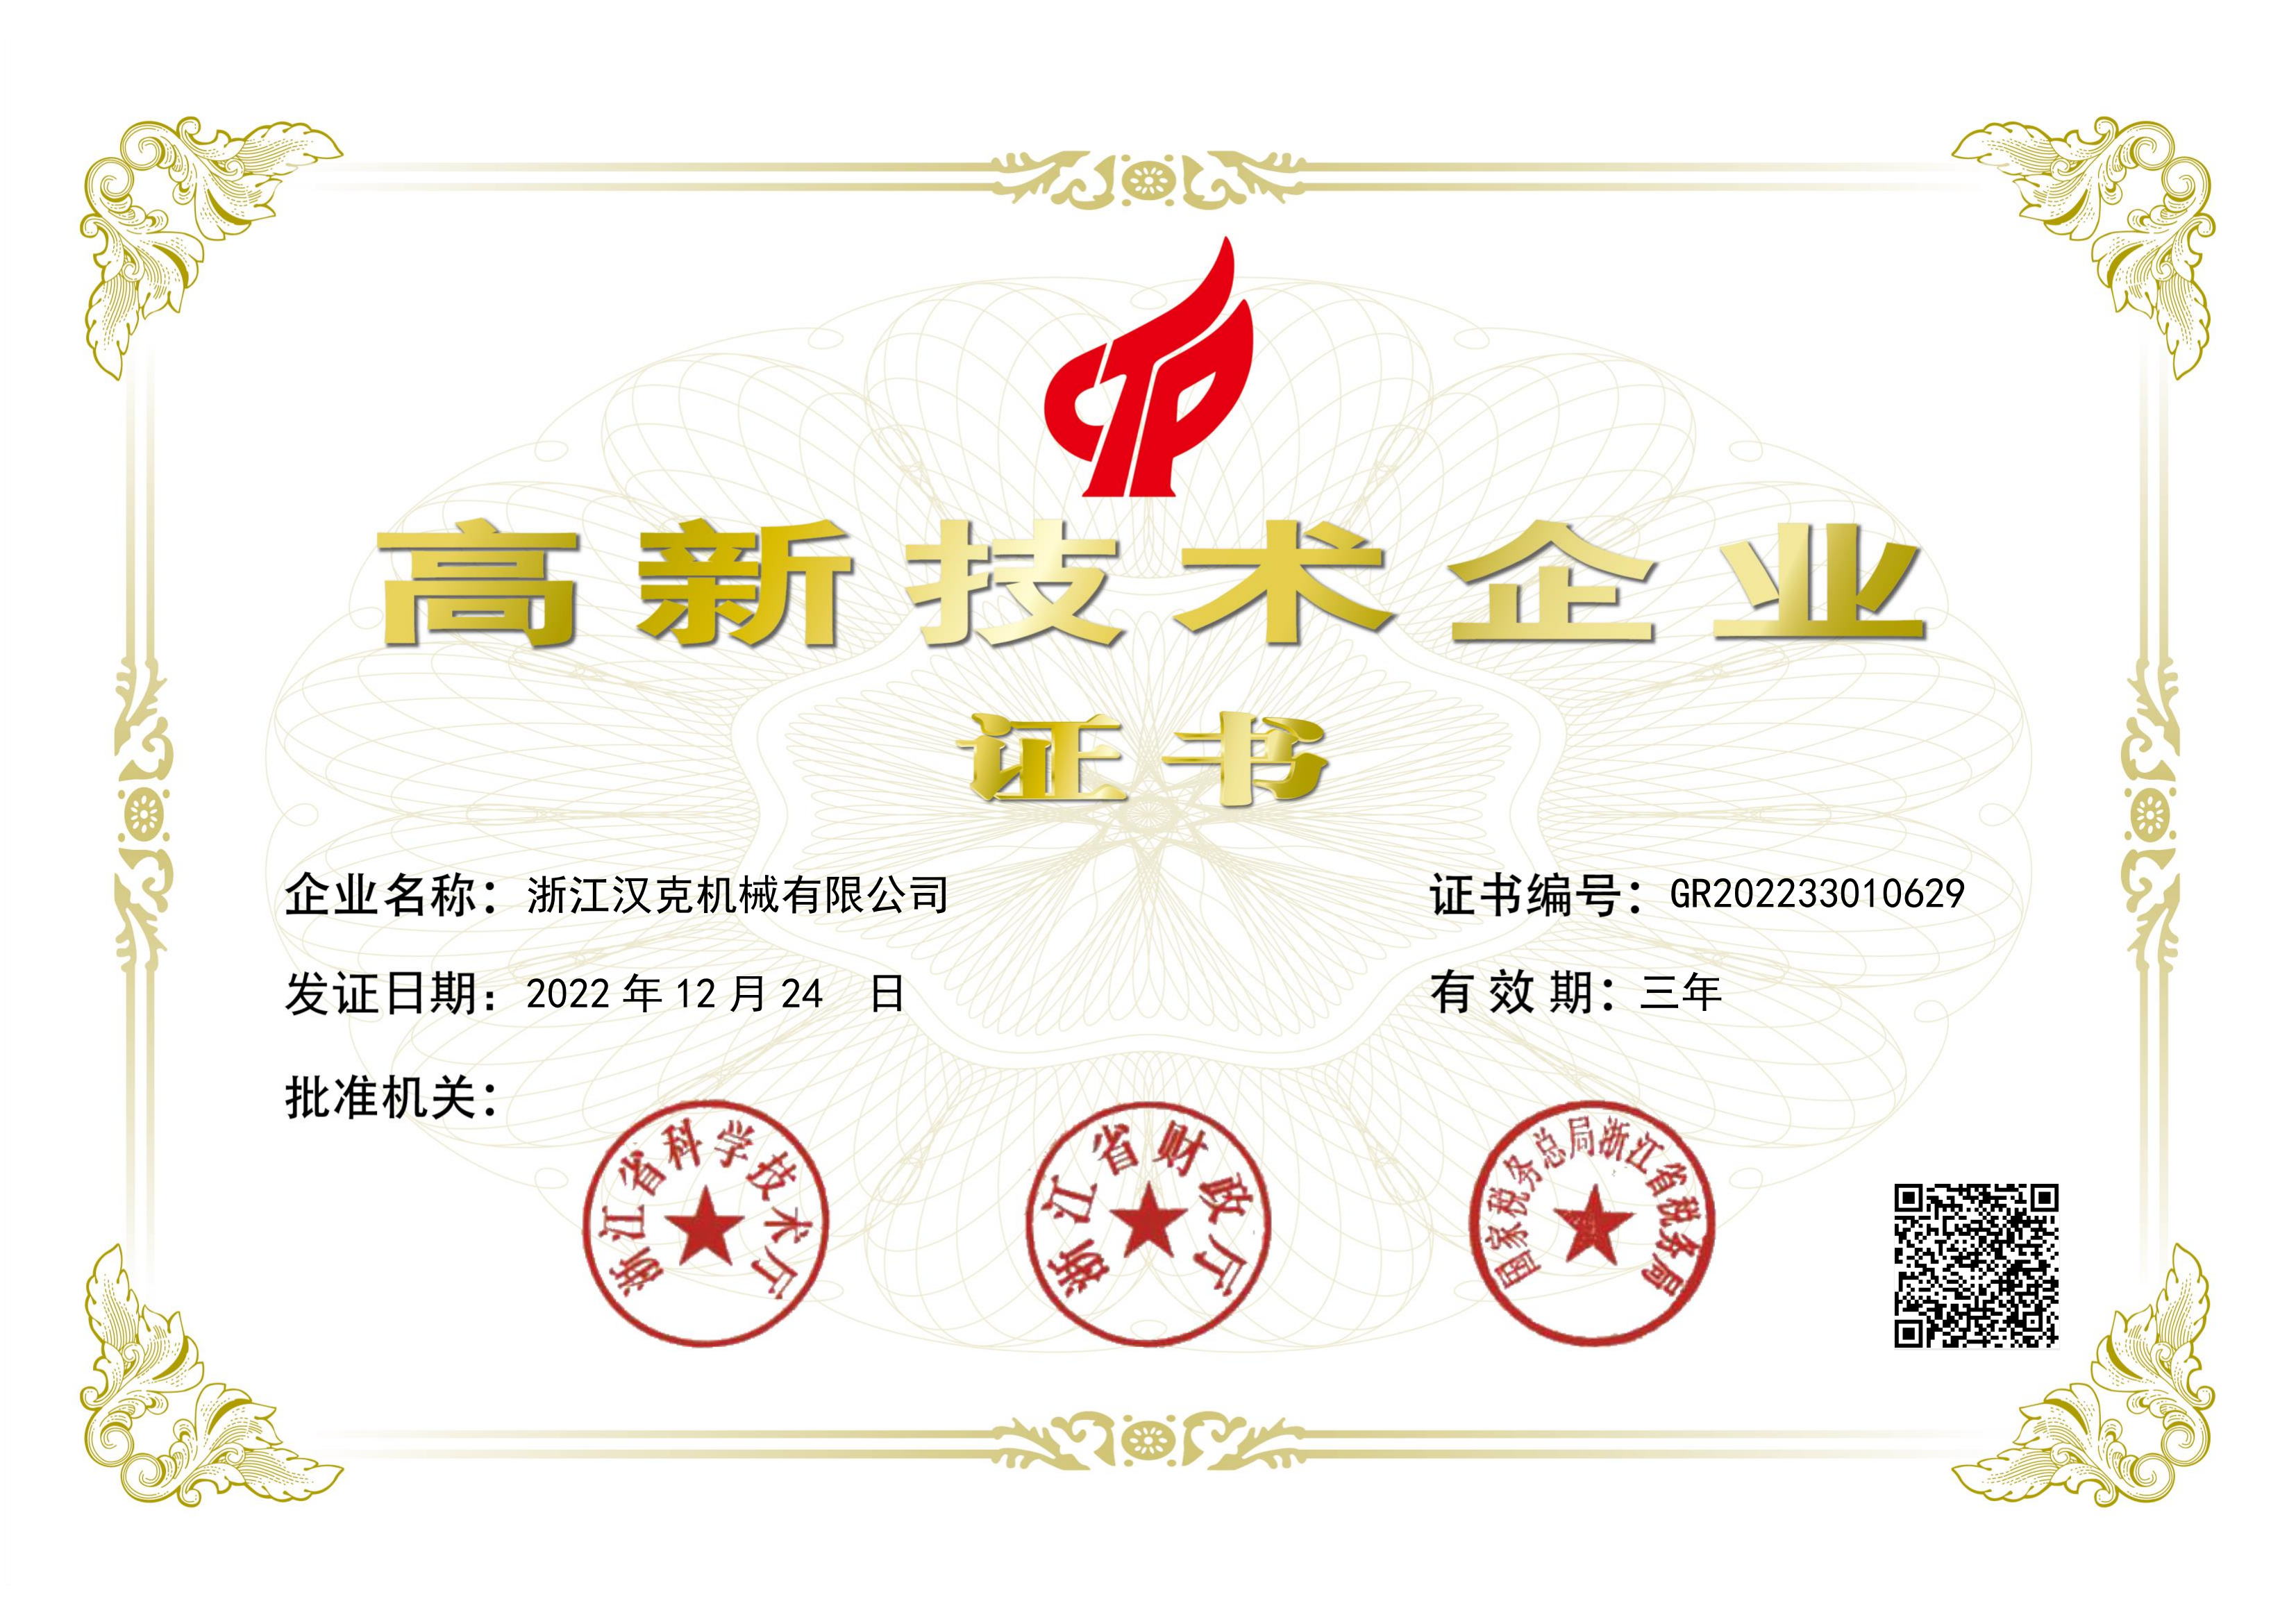 Zhejiang HEC Txina 2022 goi-teknologiako enpresen zerrendan.